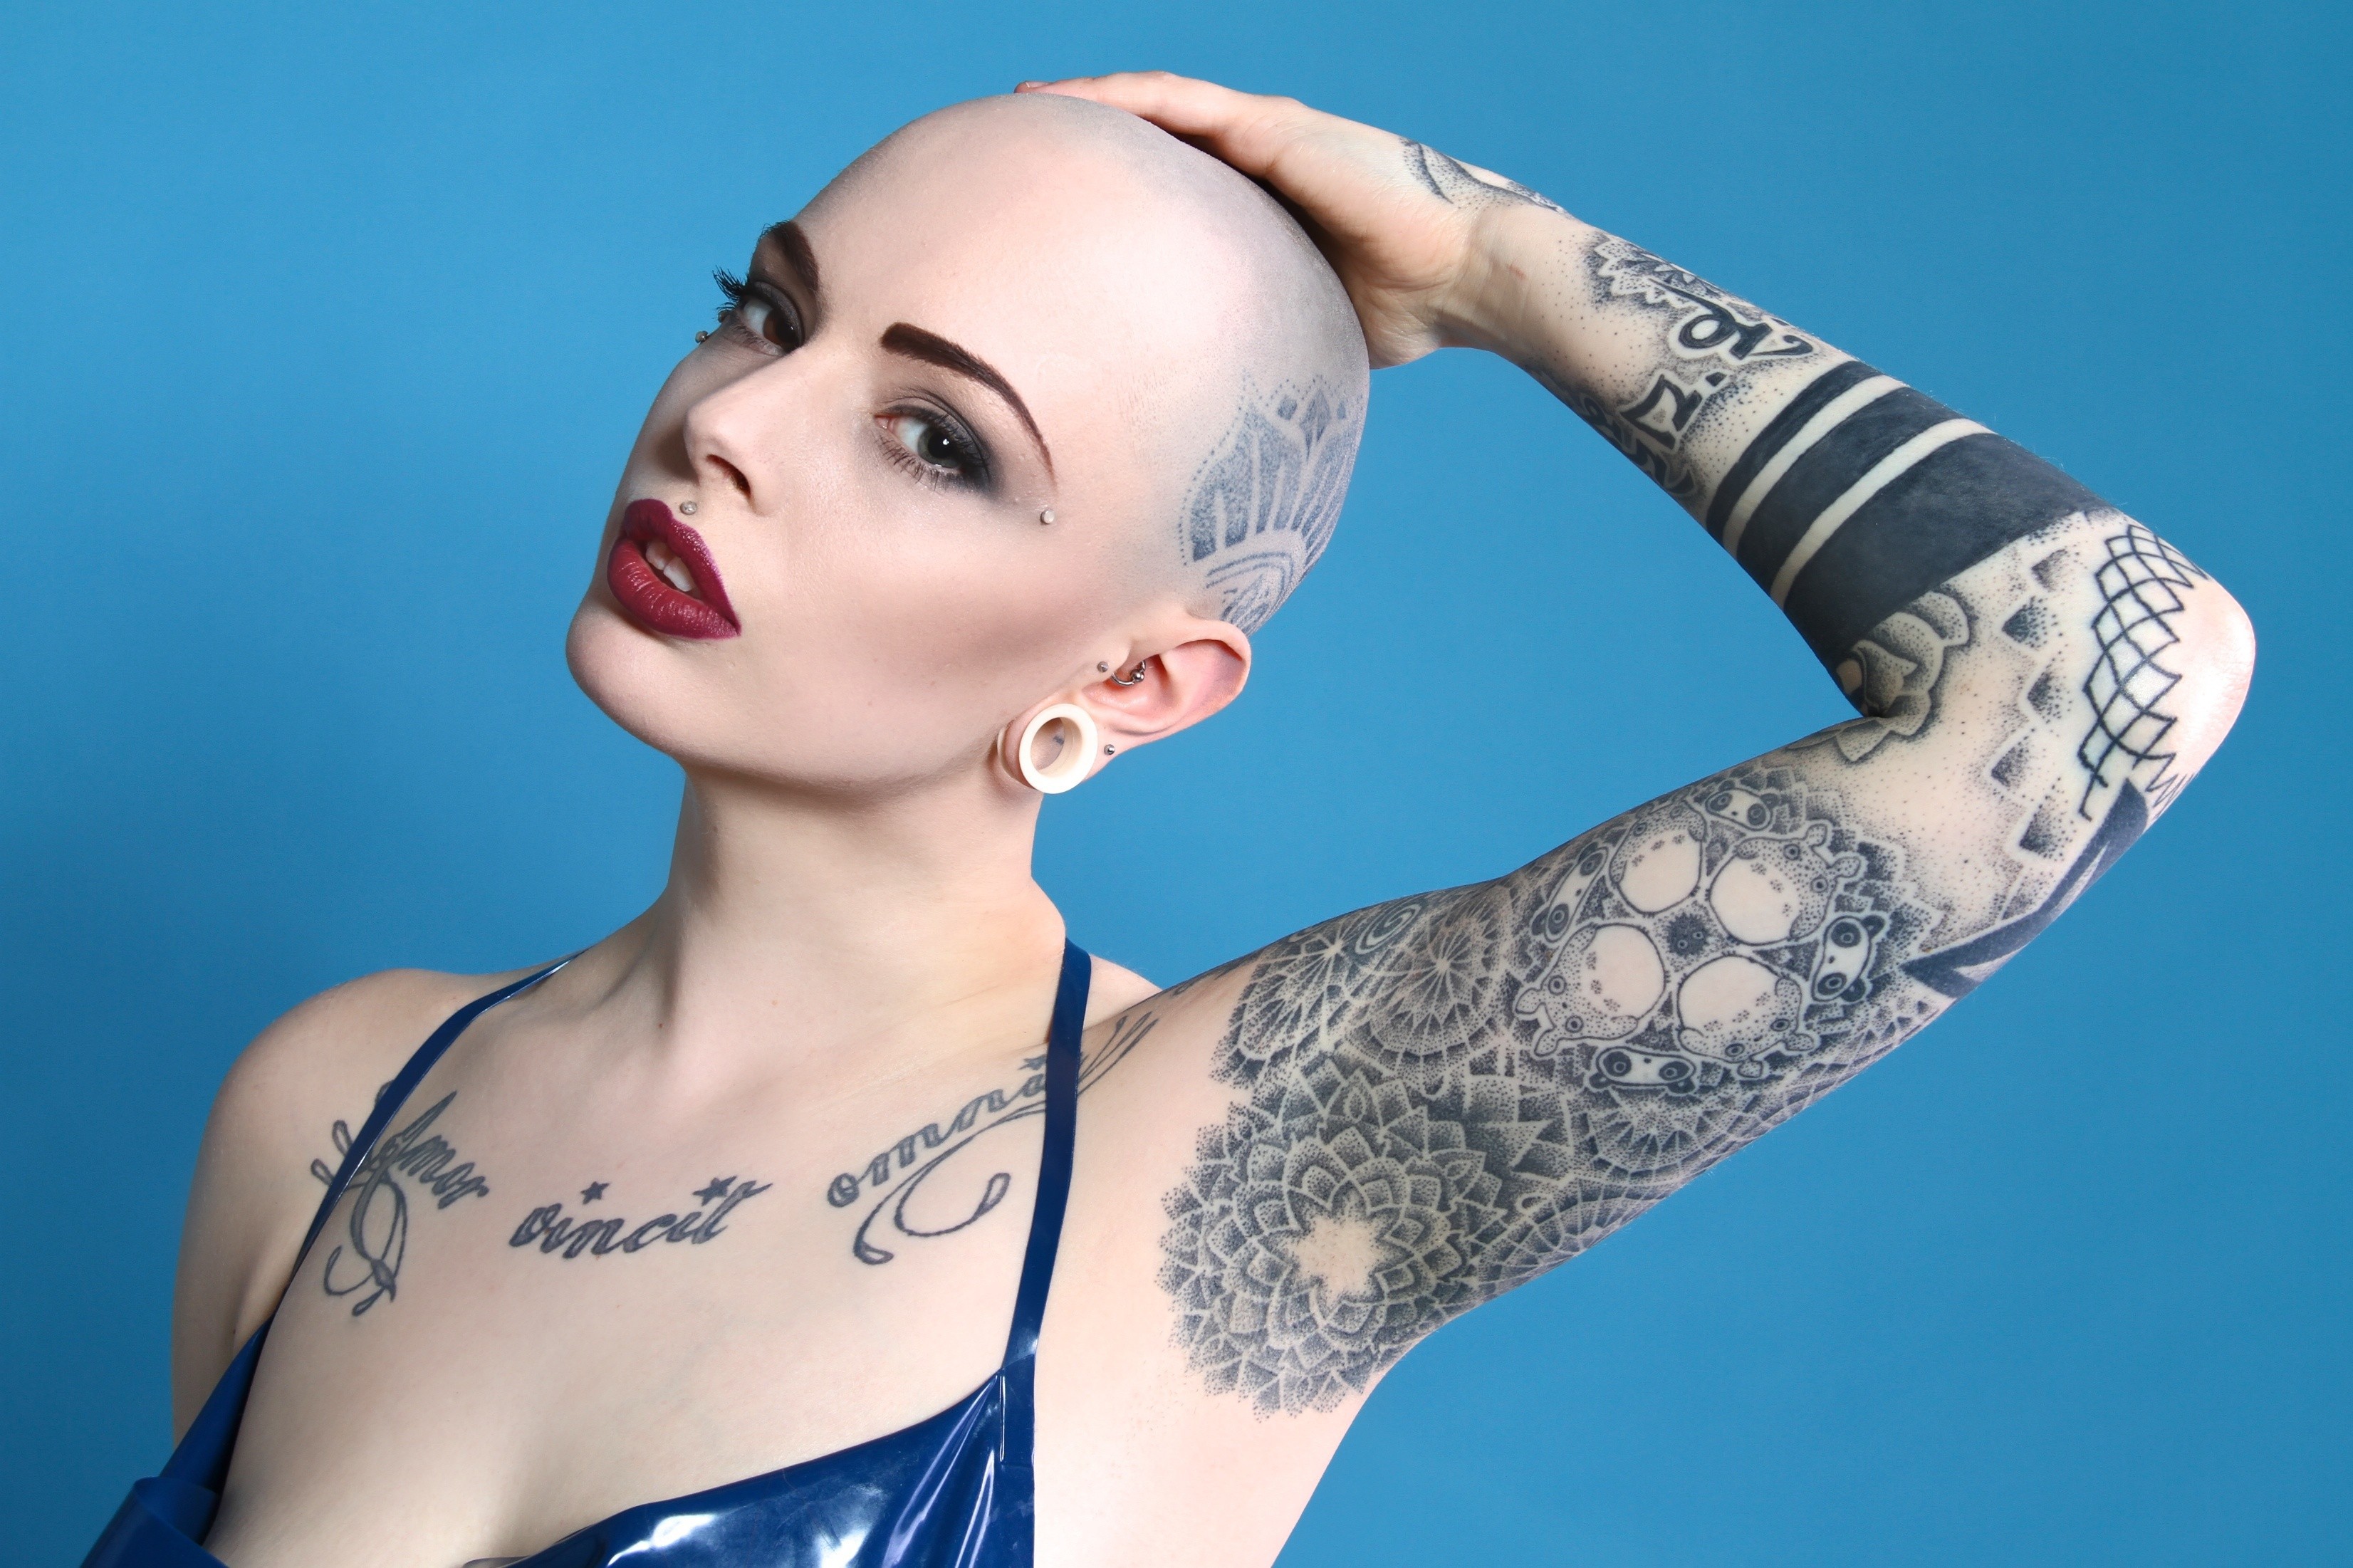 Лысая голова татуировке не помеха - Татуировки: лучшие эскизы, фото, статьи и видео